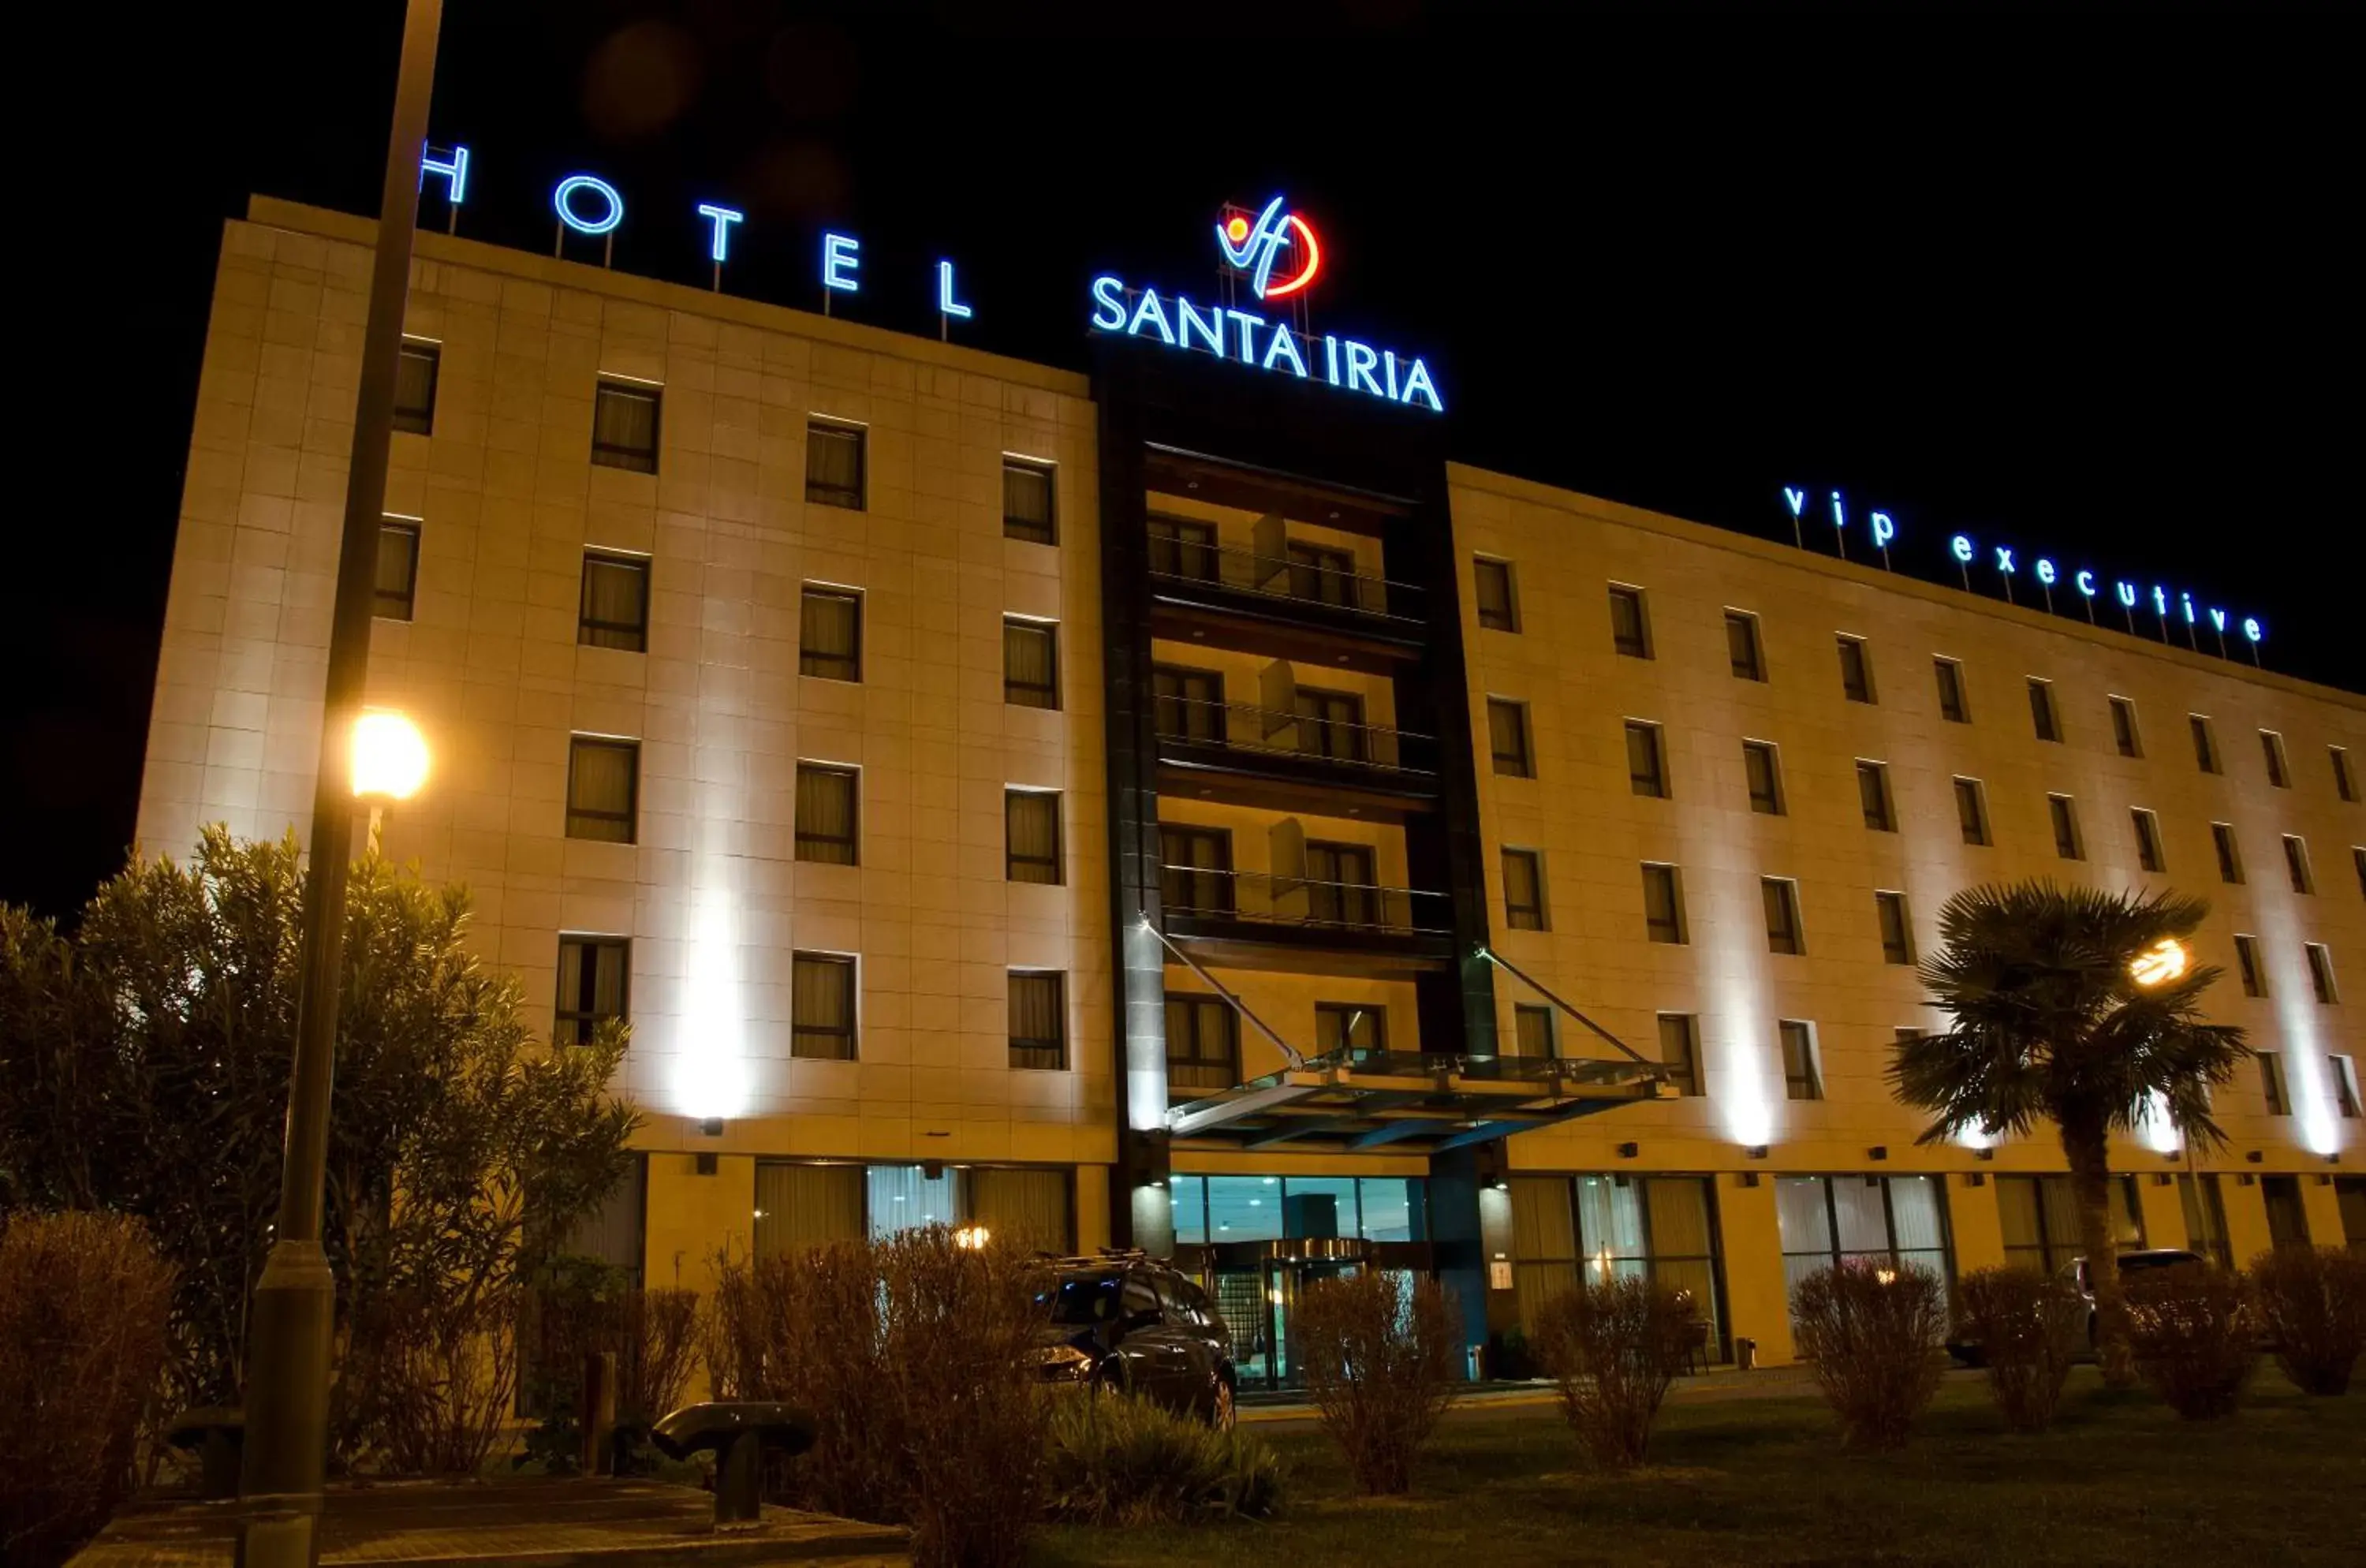 Facade/entrance, Property Building in VIP Executive Santa Iria Hotel